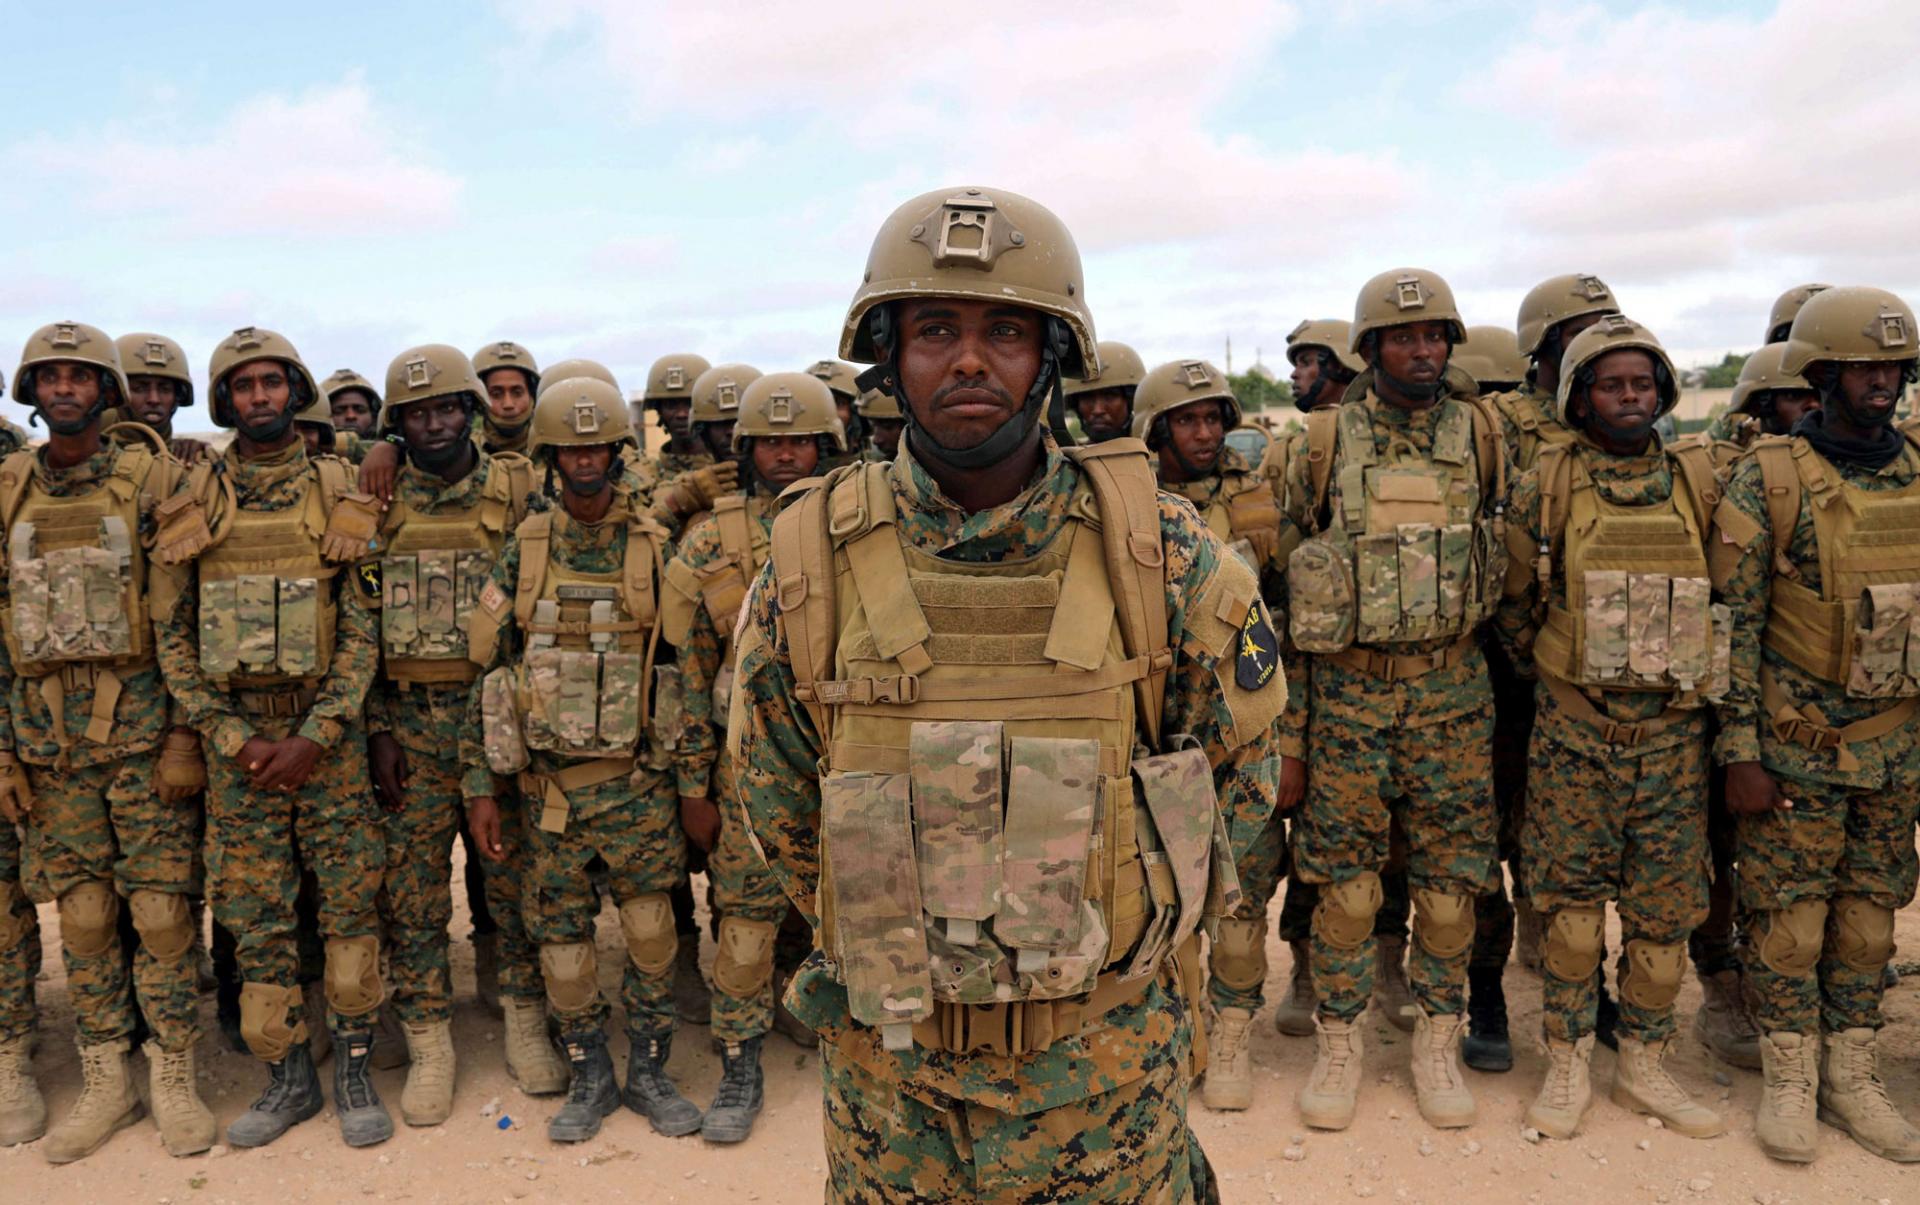 الجيش الصومالي